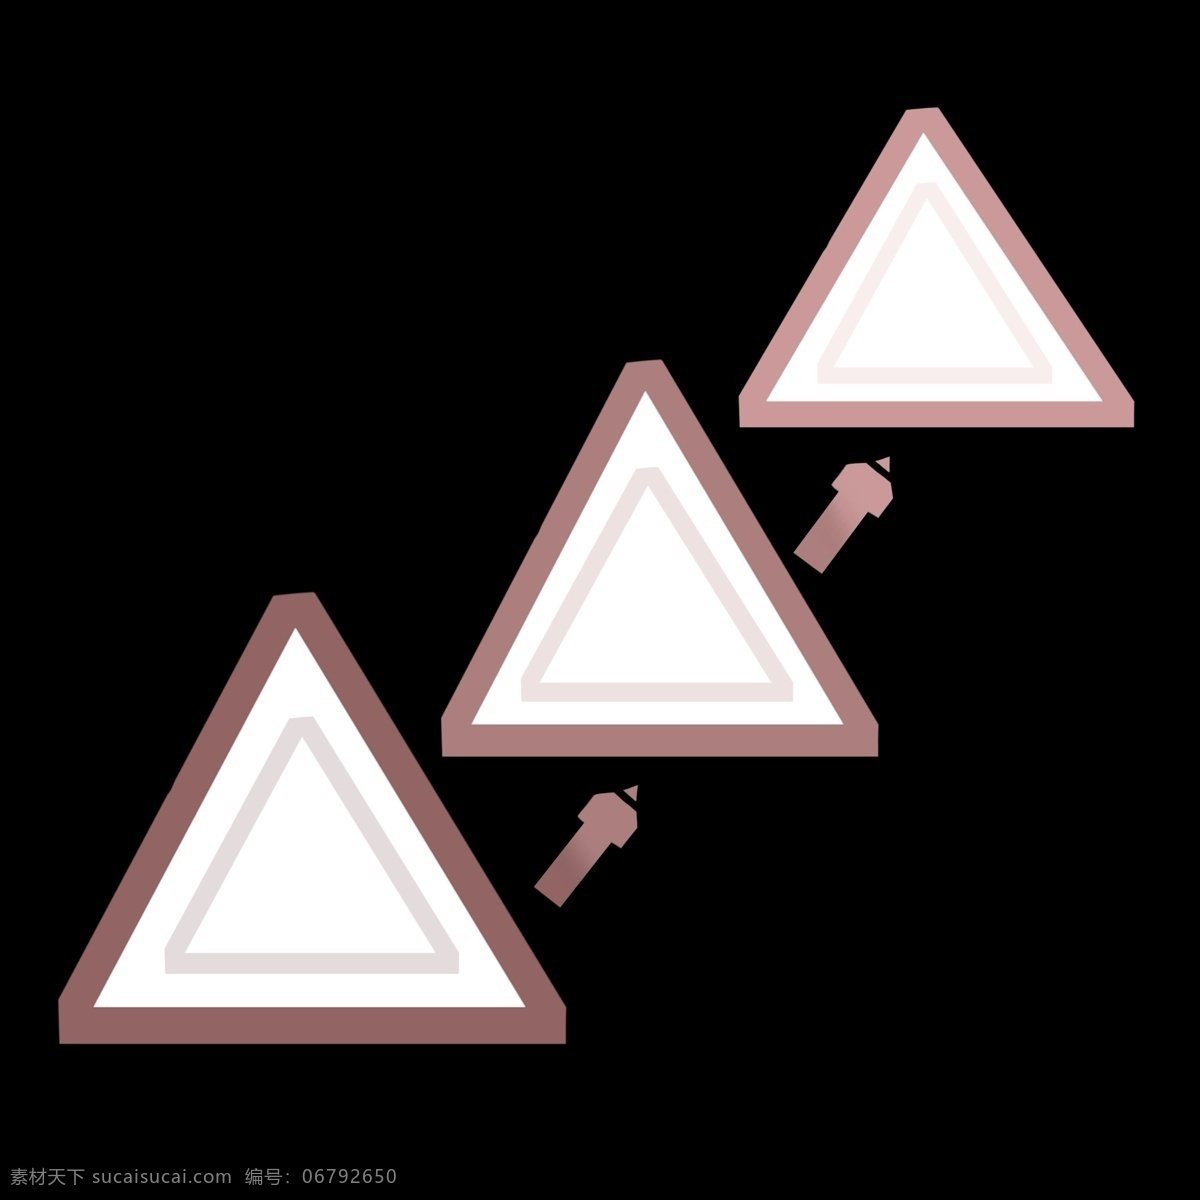 三角形 目录 插画 三角的目录 ppt美丽 ppt插画 分类目录 简介目录 介绍目录 褐色的三角